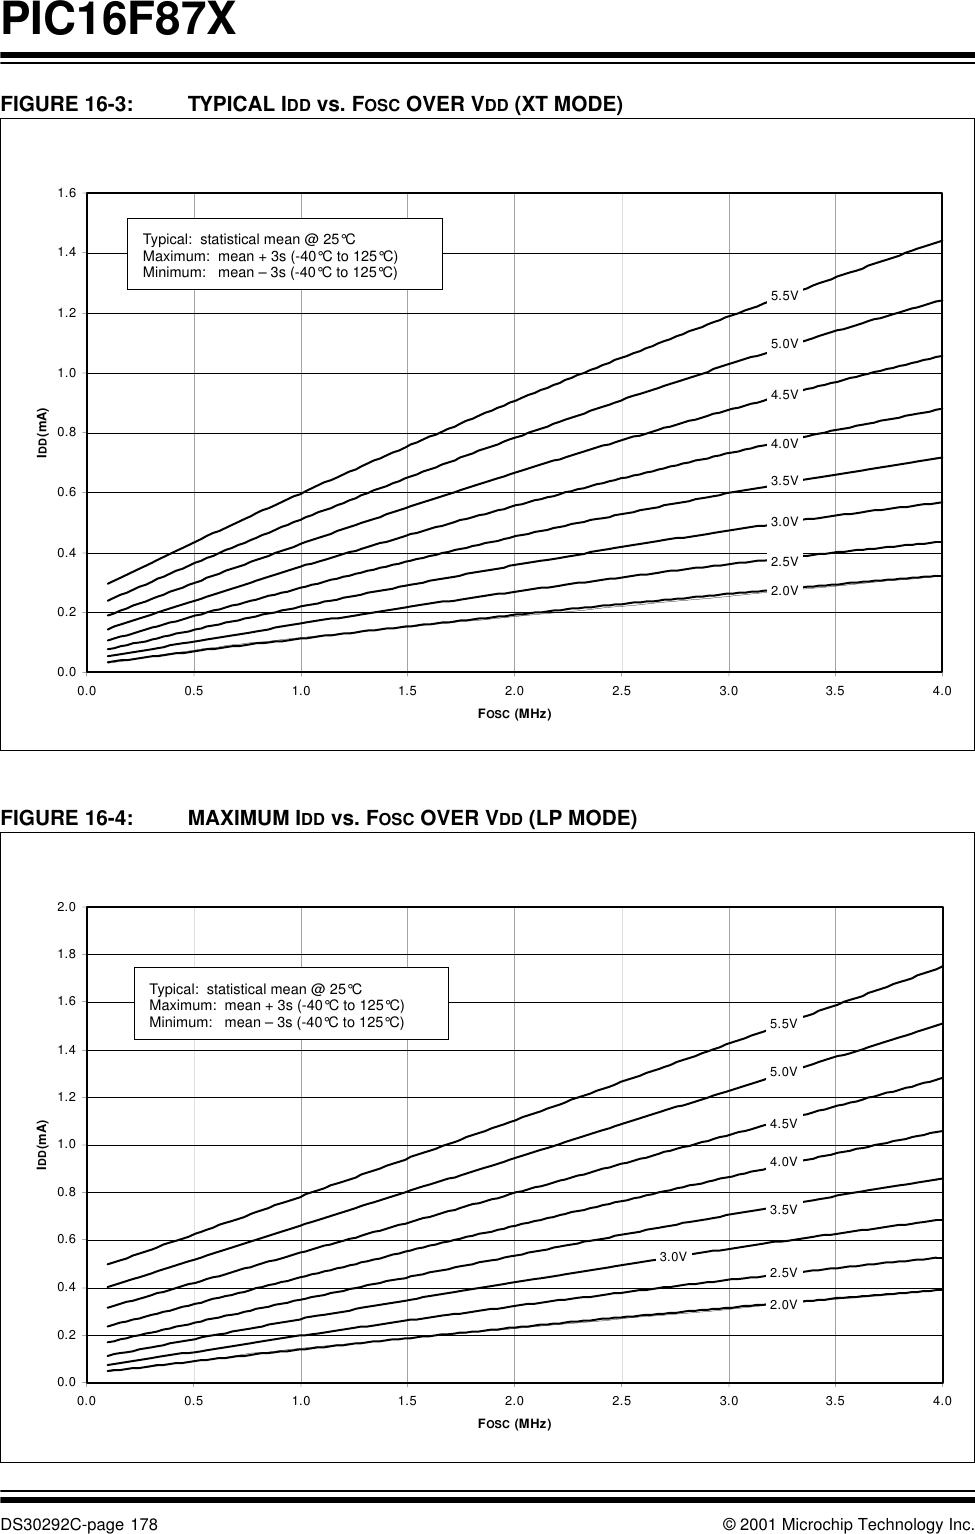 PIC16F87XDS30292C-page 178 © 2001 Microchip Technology Inc.FIGURE 16-3: TYPICAL IDD vs. FOSC OVER VDD (XT MODE) FIGURE 16-4: MAXIMUM IDD vs. FOSC OVER VDD (LP MODE) 0.00.20.40.60.81.01.21.41.60.00.51.01.52.02.53.03.54.0FOSC (MHz)IDD (mA)5.5V5.0V4.5V4.0V3.5V2.5V2.0V3.0VTypical:  statistical mean @ 25°CMaximum:  mean + 3s (-40°C to 125°C) Minimum:   mean – 3s (-40°C to 125°C)0.00.20.40.60.81.01.21.41.61.82.00.0 0.5 1.0 1.5 2.0 2.5 3.0 3.5 4.0FOSC (MHz)IDD (mA)5.5V5.0V4.5V4.0V3.5V2.5V2.0V3.0VTypical:  statistical mean @ 25°CMaximum:  mean + 3s (-40°C to 125°C) Minimum:   mean – 3s (-40°C to 125°C)